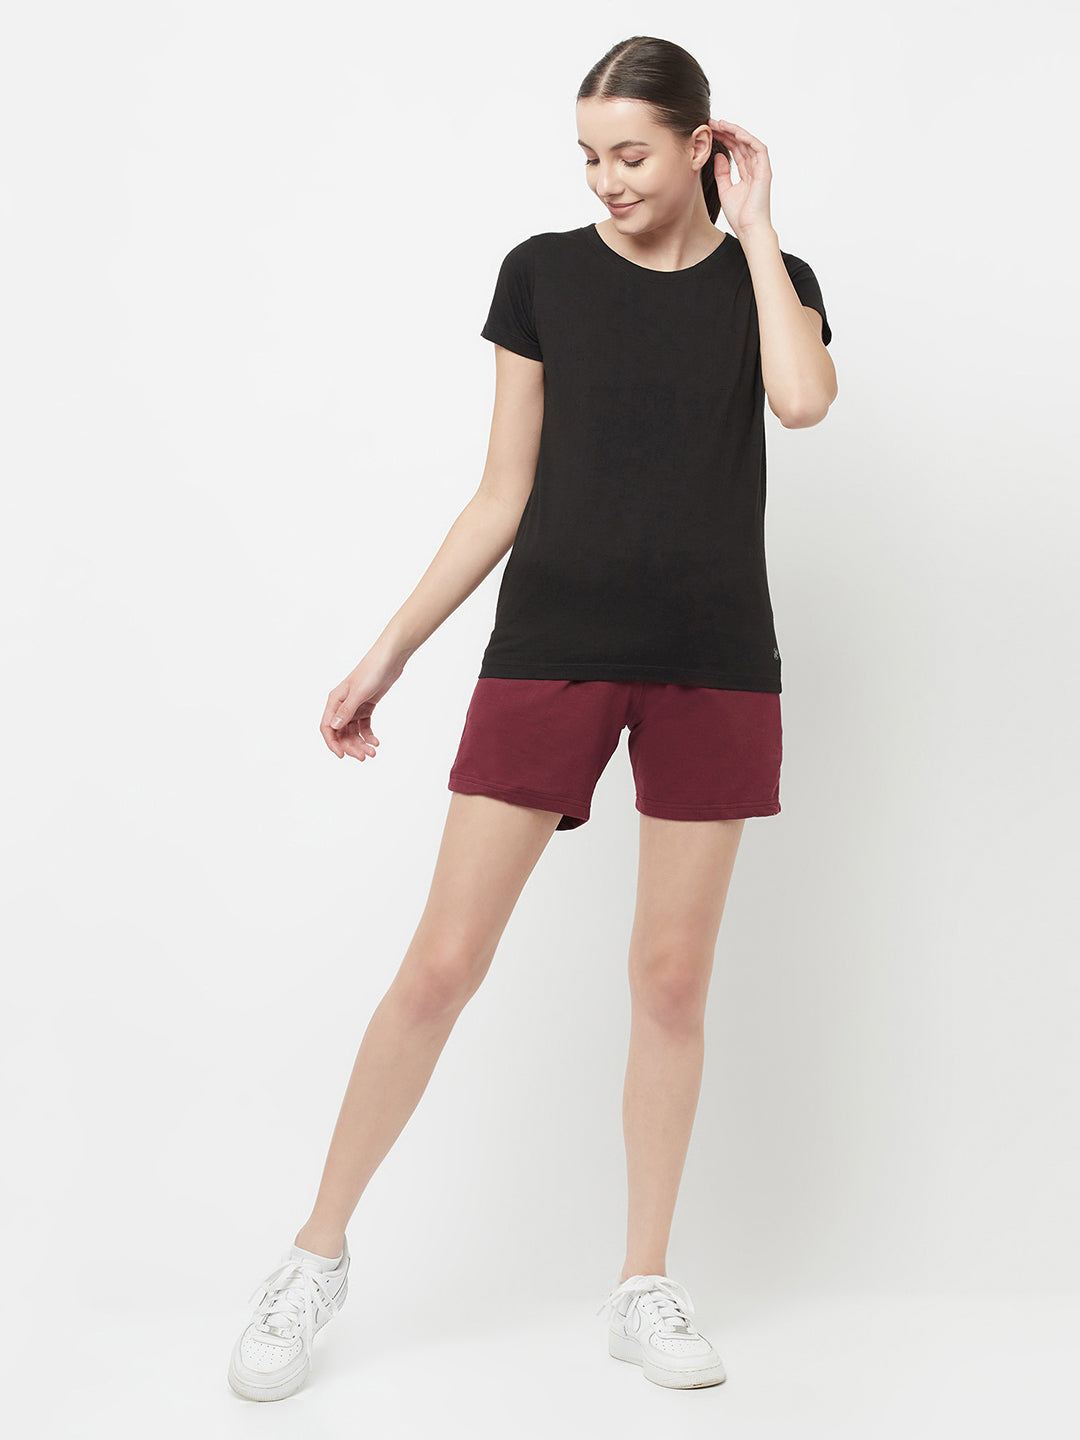 Slim Fit Premium Cotton Tshirts (Pack of 2- Black, Orange)